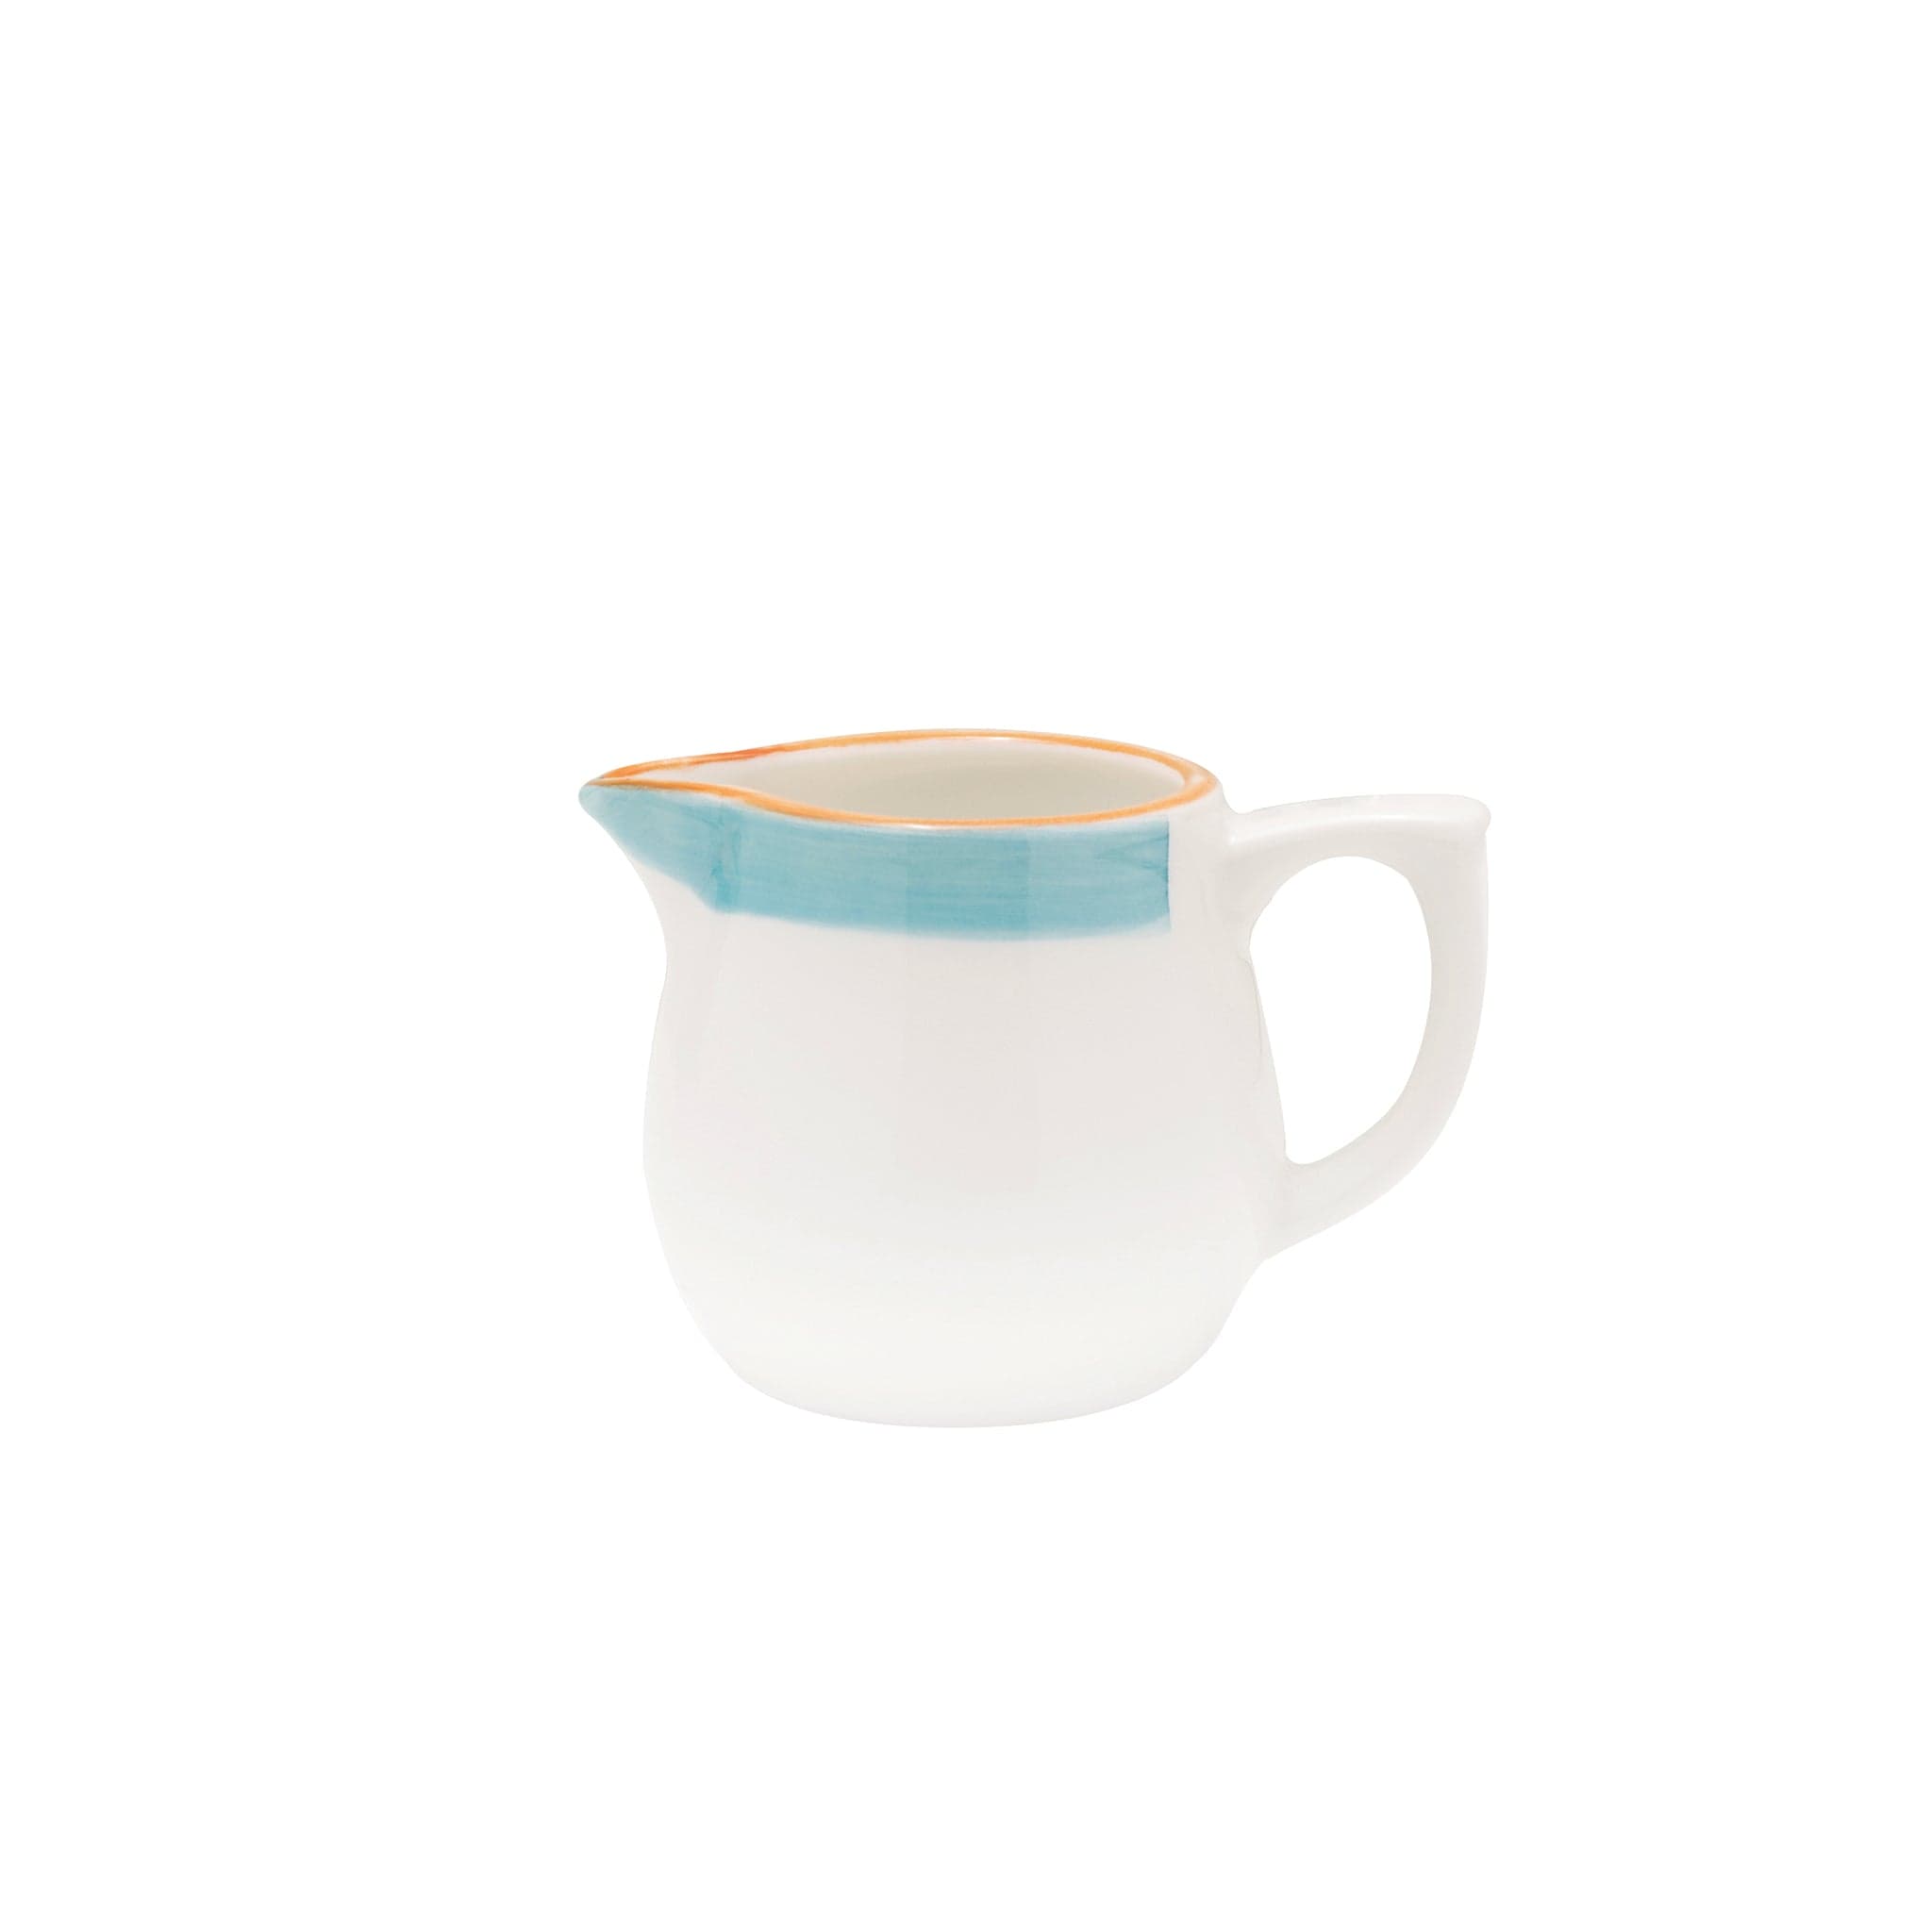 Bistro Sunday Brunch Porcelain Creamer 3.7" / 10.4oz Turquoise